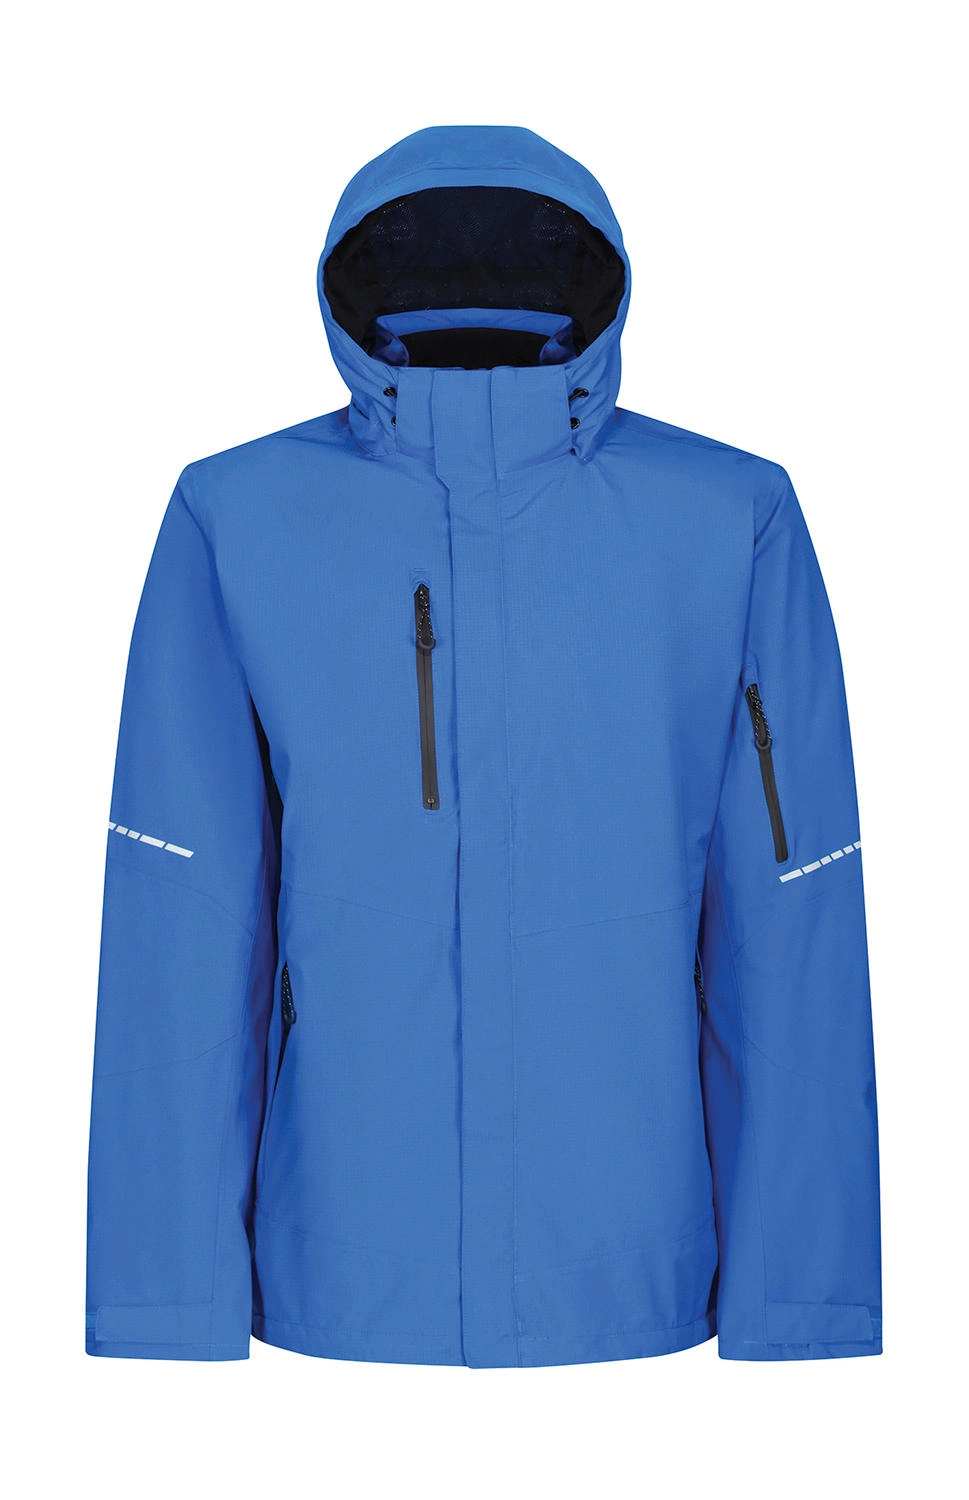 X-Pro Exosphere II Shell Jacket zum Besticken und Bedrucken in der Farbe Oxford Blue/Black mit Ihren Logo, Schriftzug oder Motiv.